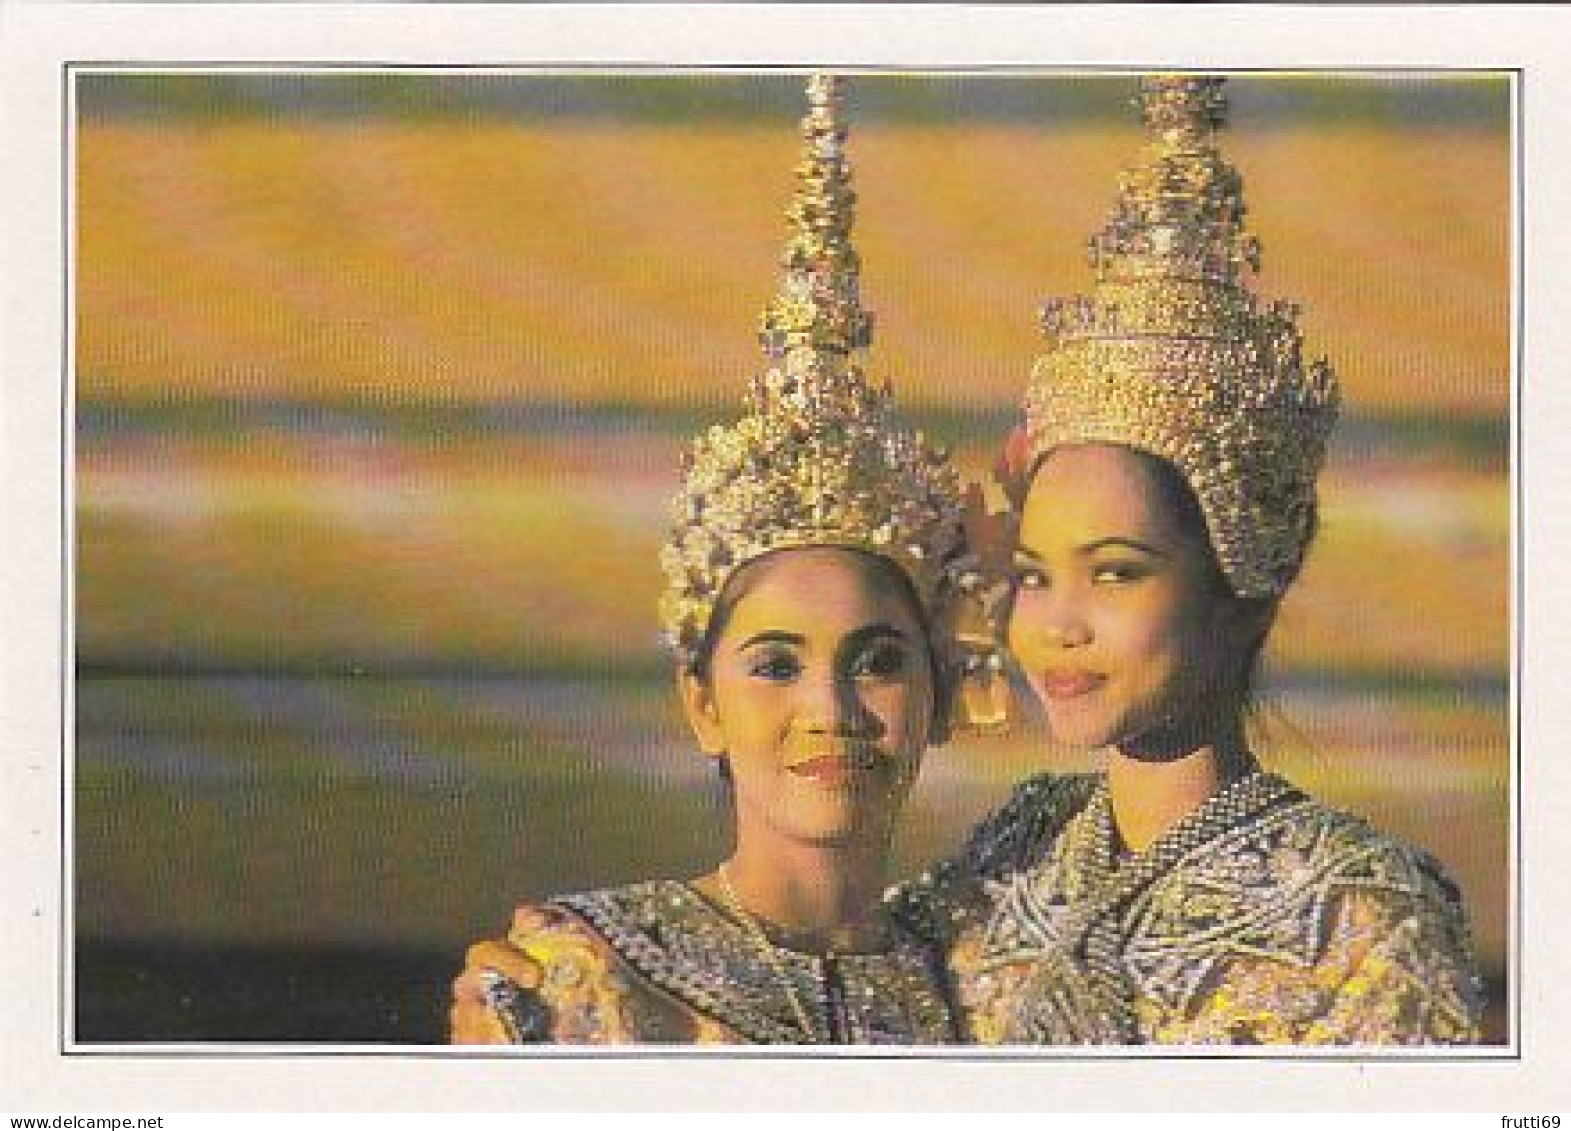 AK148215 THAILAND - Bangkok - Tänzerinnen - Thaïlande